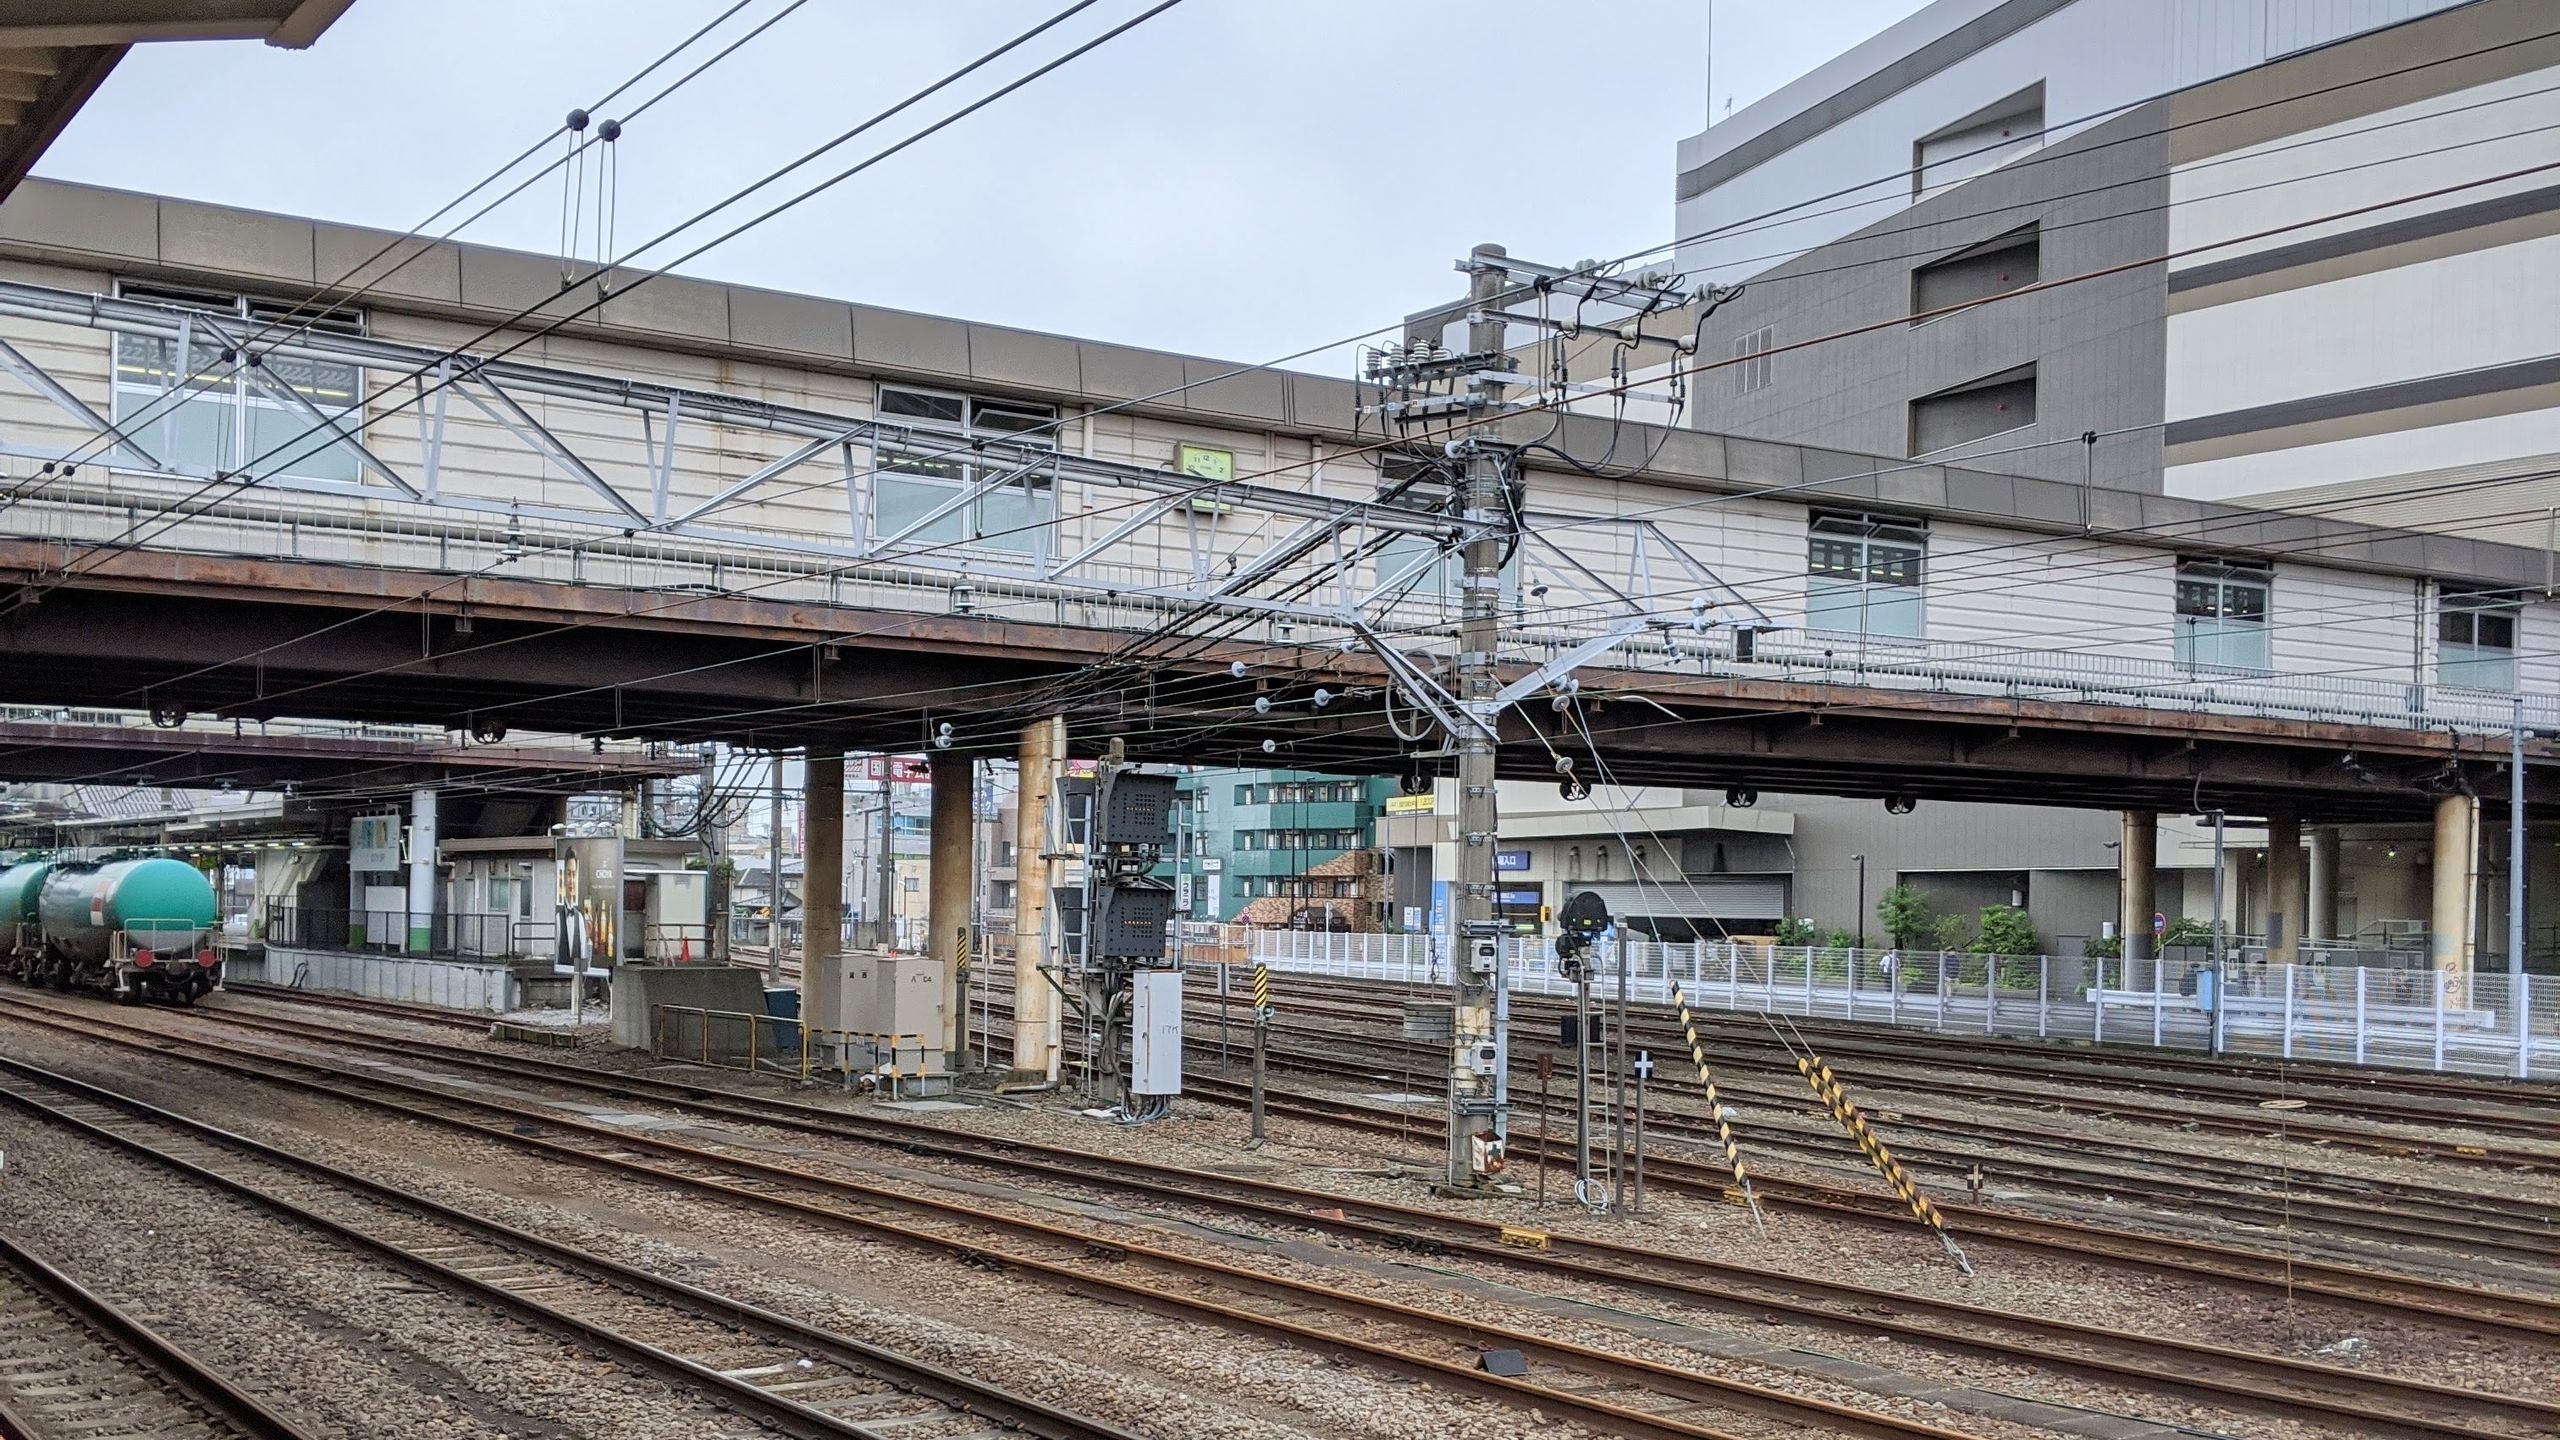 いつもは停車中の貨物列車や特別編成の列車でいっぱいの八王子駅も、1台しか停車していない。